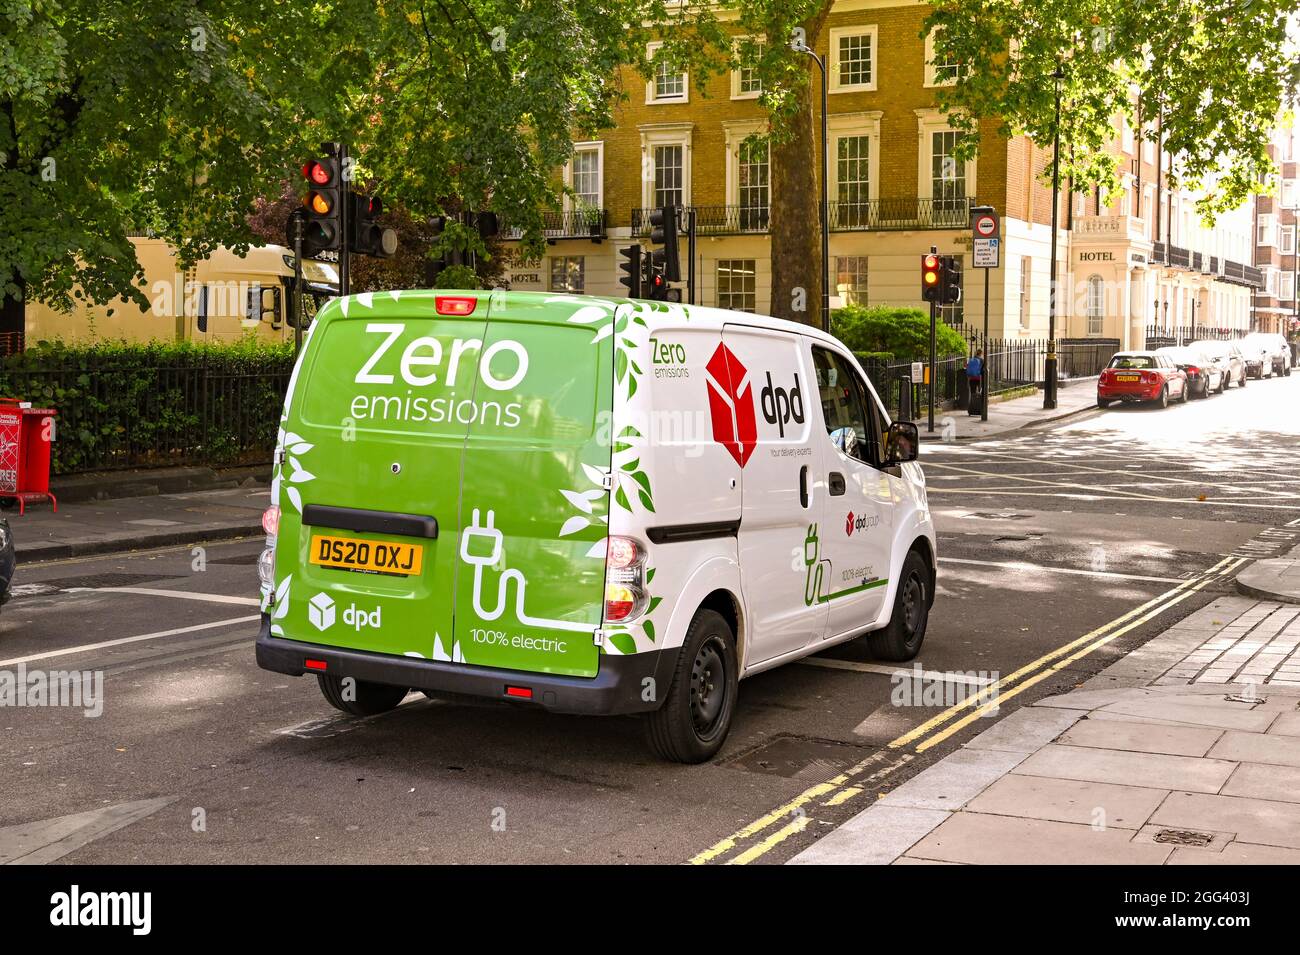 London, England - August 2021: DPD Lieferwagen voll elektrisch angetrieben und emissionsfrei. Sie ist Teil der Reaktion des Unternehmens auf den Klimawandel Stockfoto